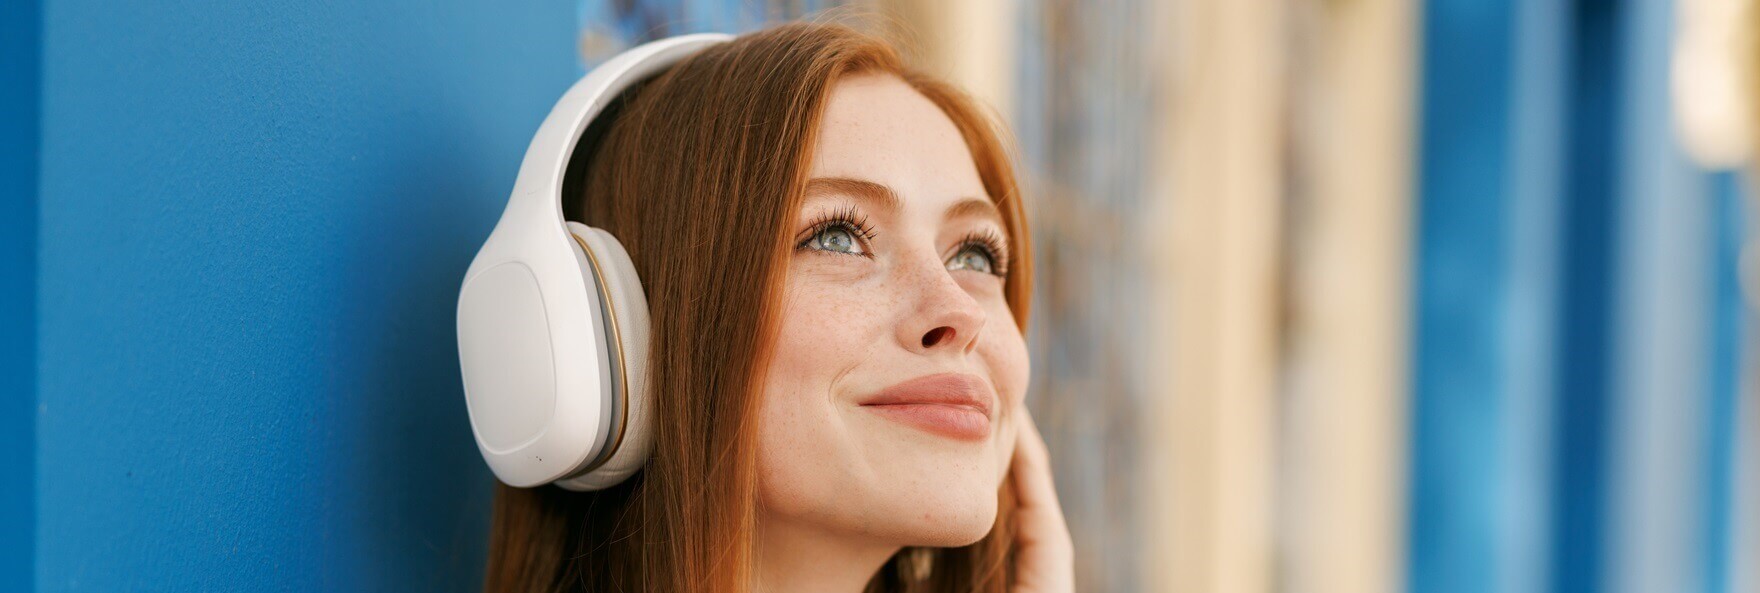 6 rádios para aprender em inglês e aprimorar seu listening